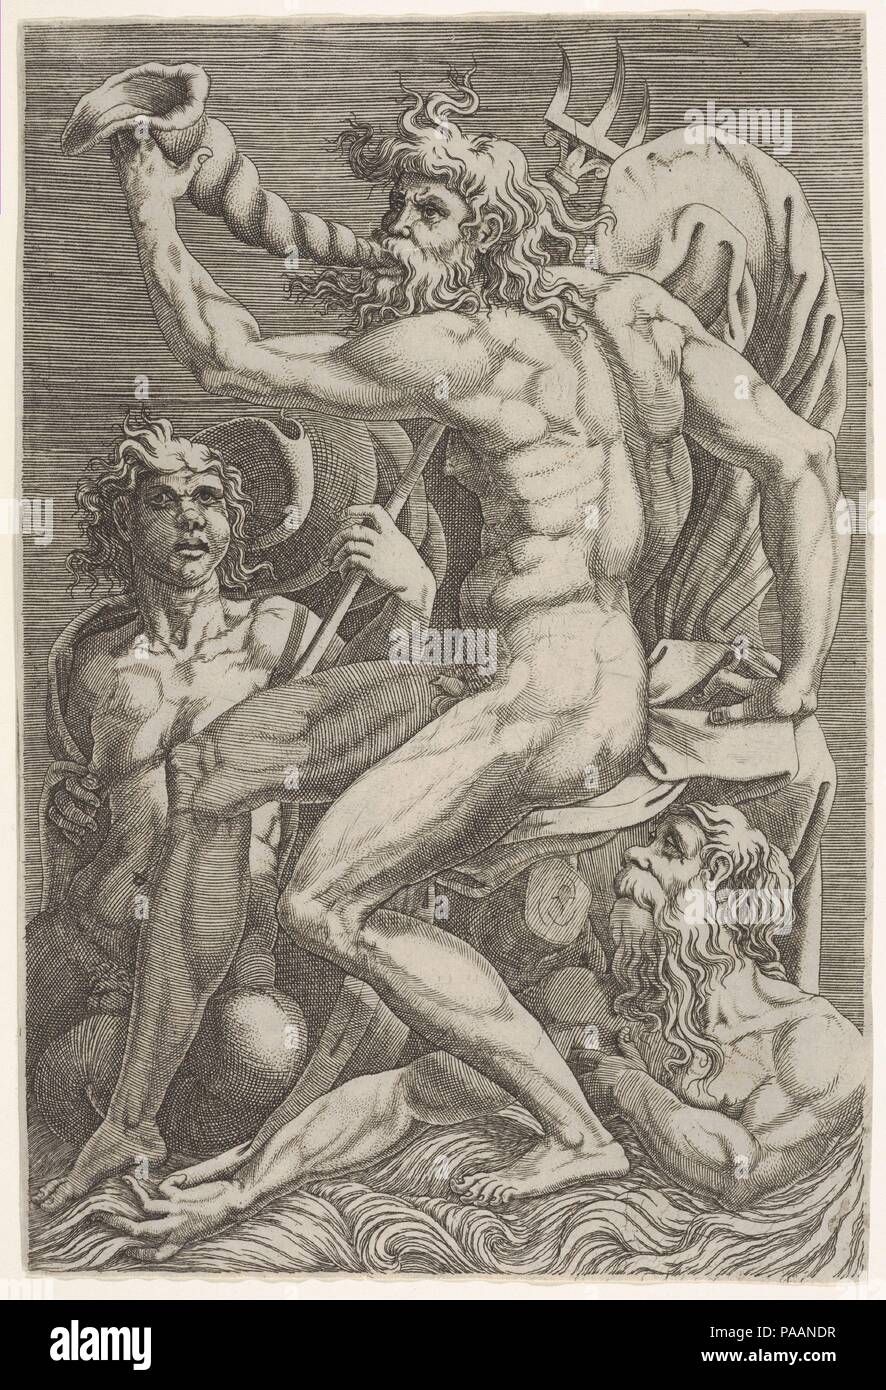 Neptune assis tenant une conque à sa bouche, accompagné d'un assis triton et un autre sortant de l'eau en bas à droite. Artiste : après Perino del Vaga (Pietro Buonaccorsi (Italien), Florence Rome 1501-1547) ; attribuée à Giorgio Ghisi (Italien, Mantoue ca. Mantoue 1520-1582). Fiche technique : Dimensions : 9 1/8 x 6 1/8 in. (23,2 x 15,6 cm). Musée : Metropolitan Museum of Art, New York, USA. Banque D'Images